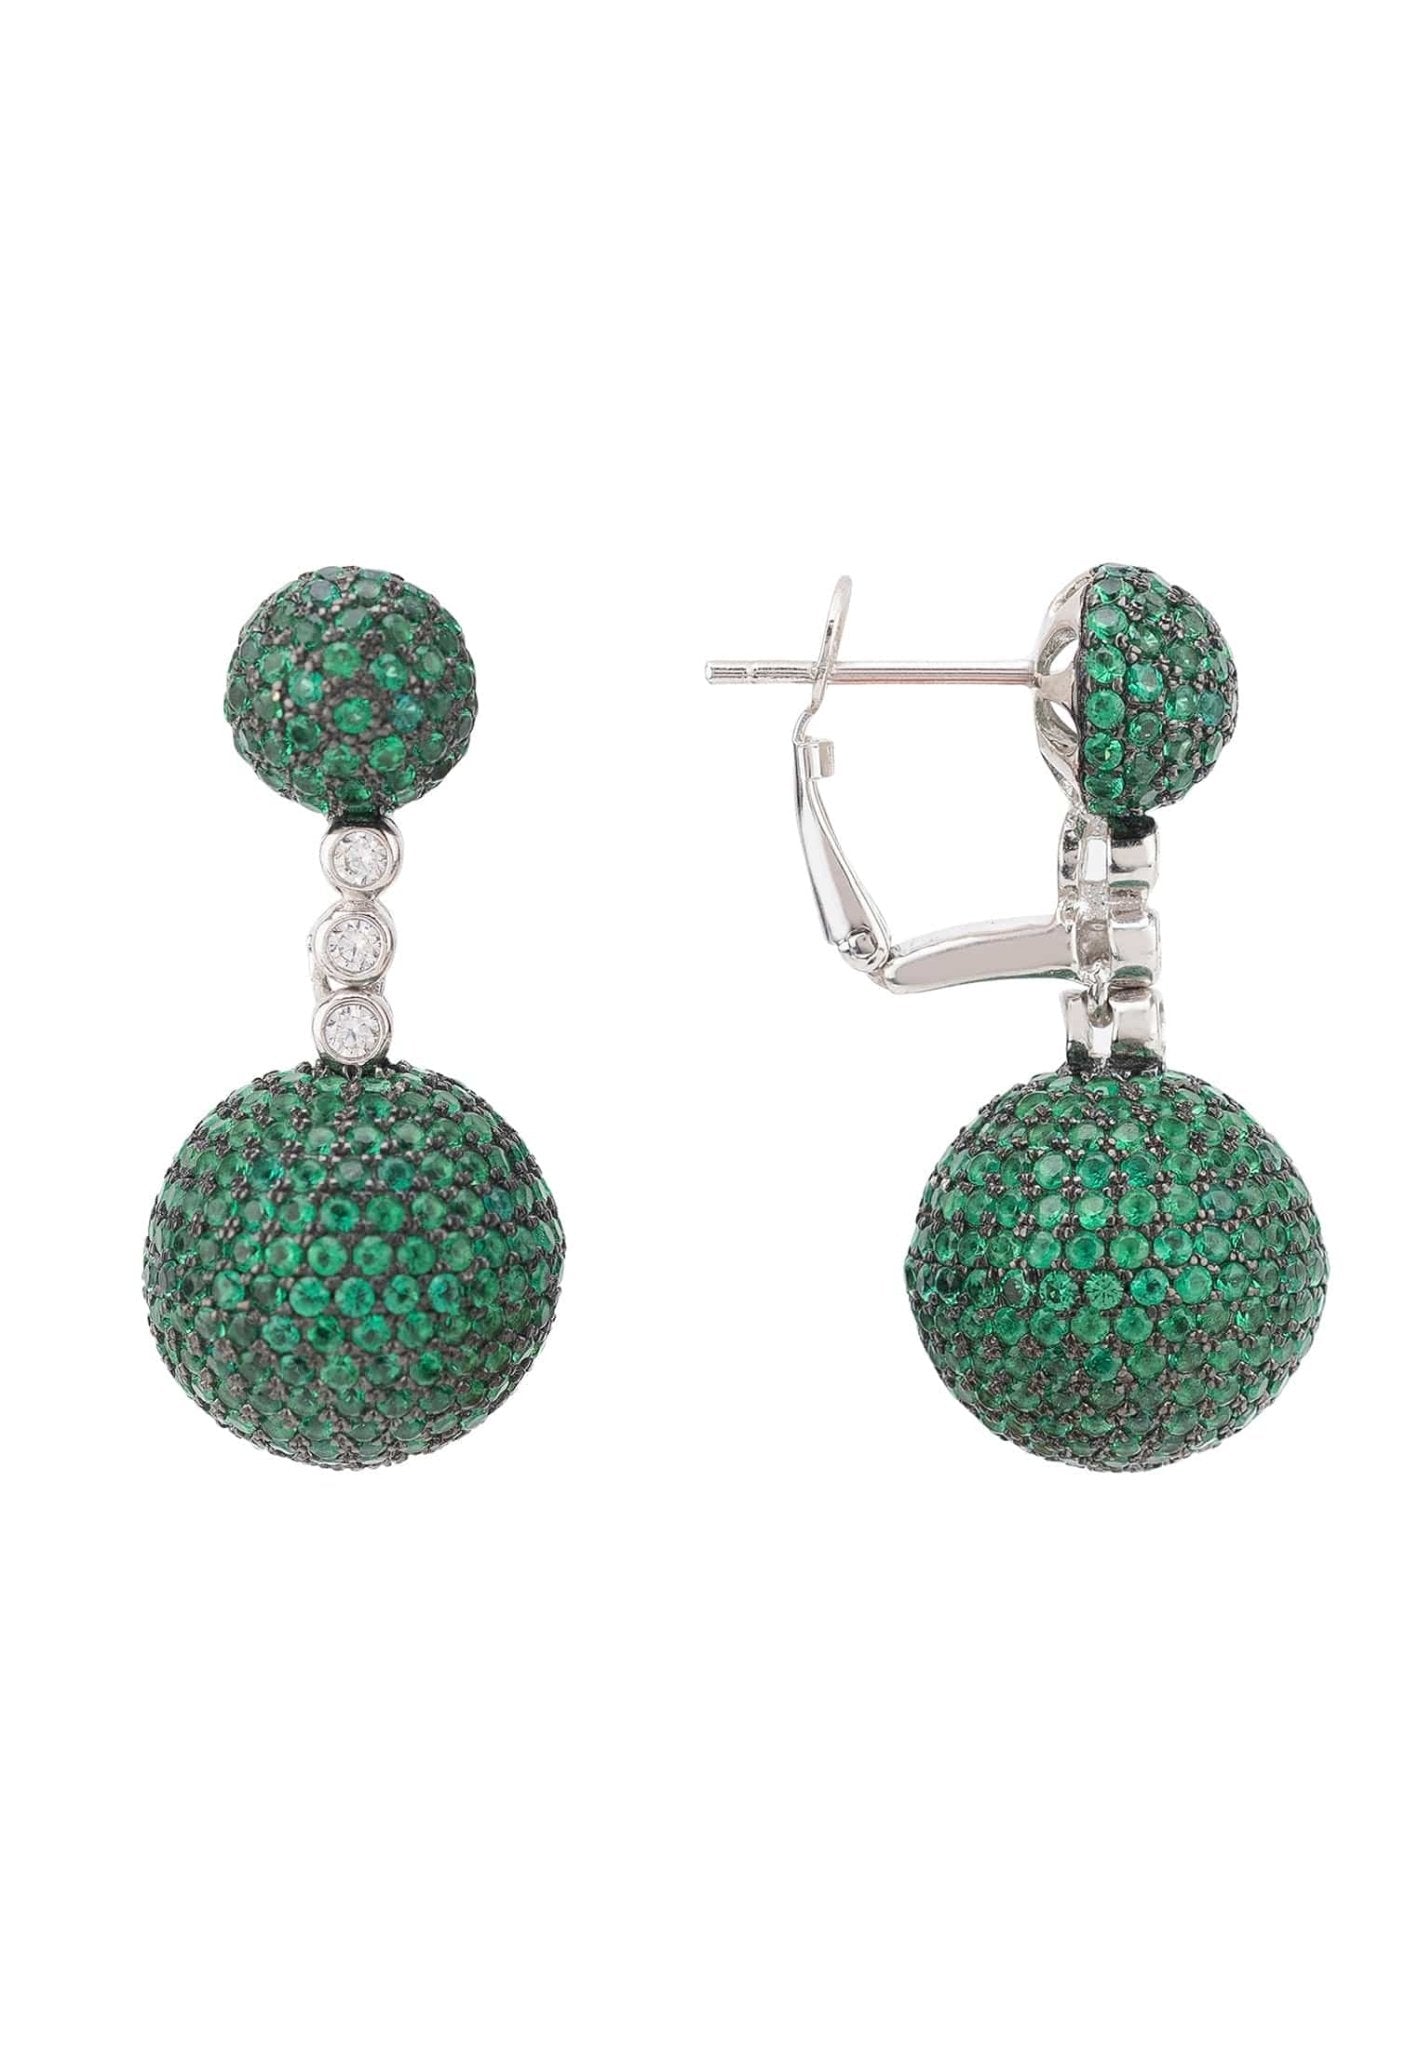 Monaco Sphere Drop Earrings Silver Emerald Green Cz - LATELITA Earrings